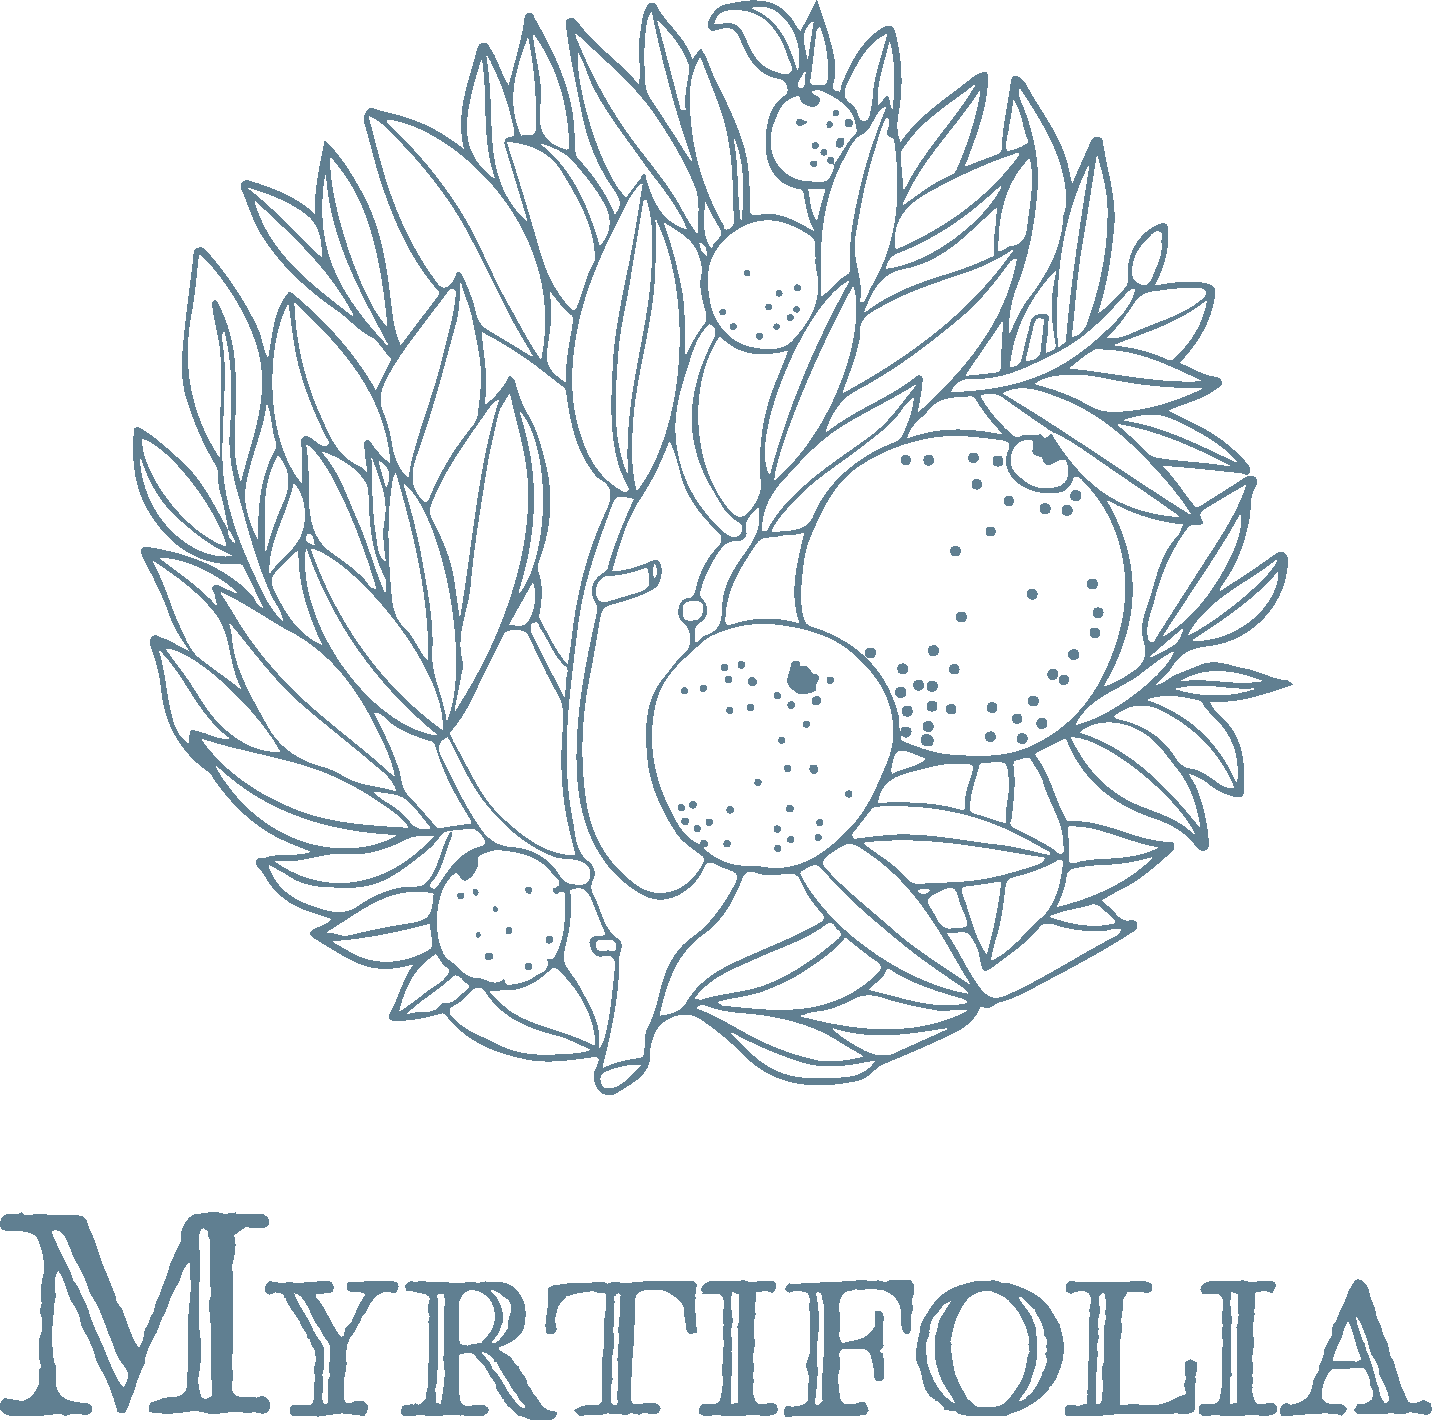 Myrtifolia